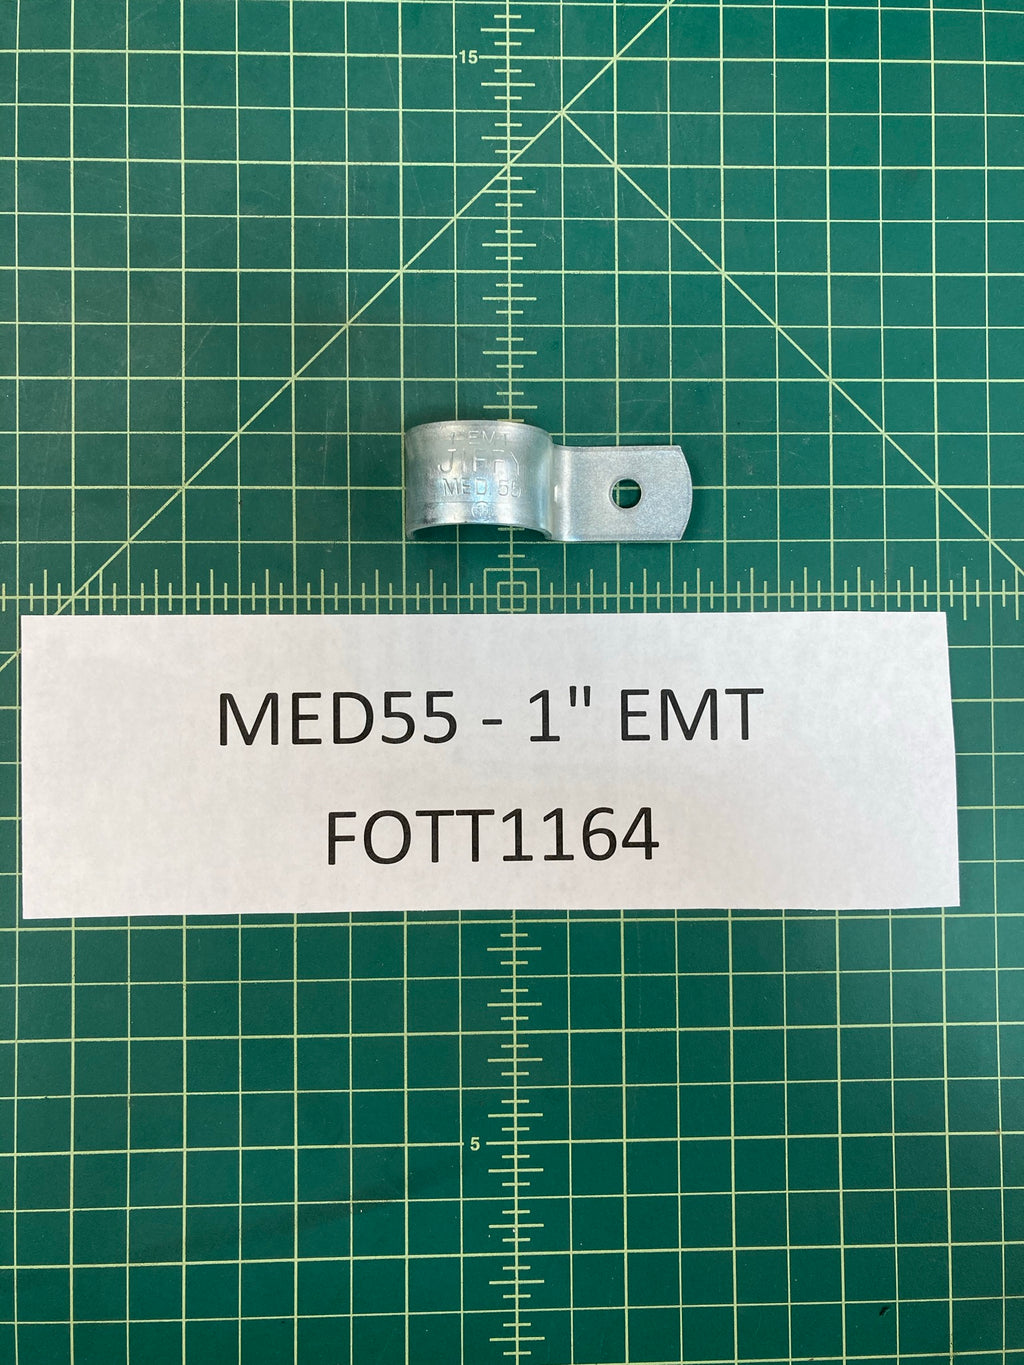 jiffy MED55 - 1" EMT